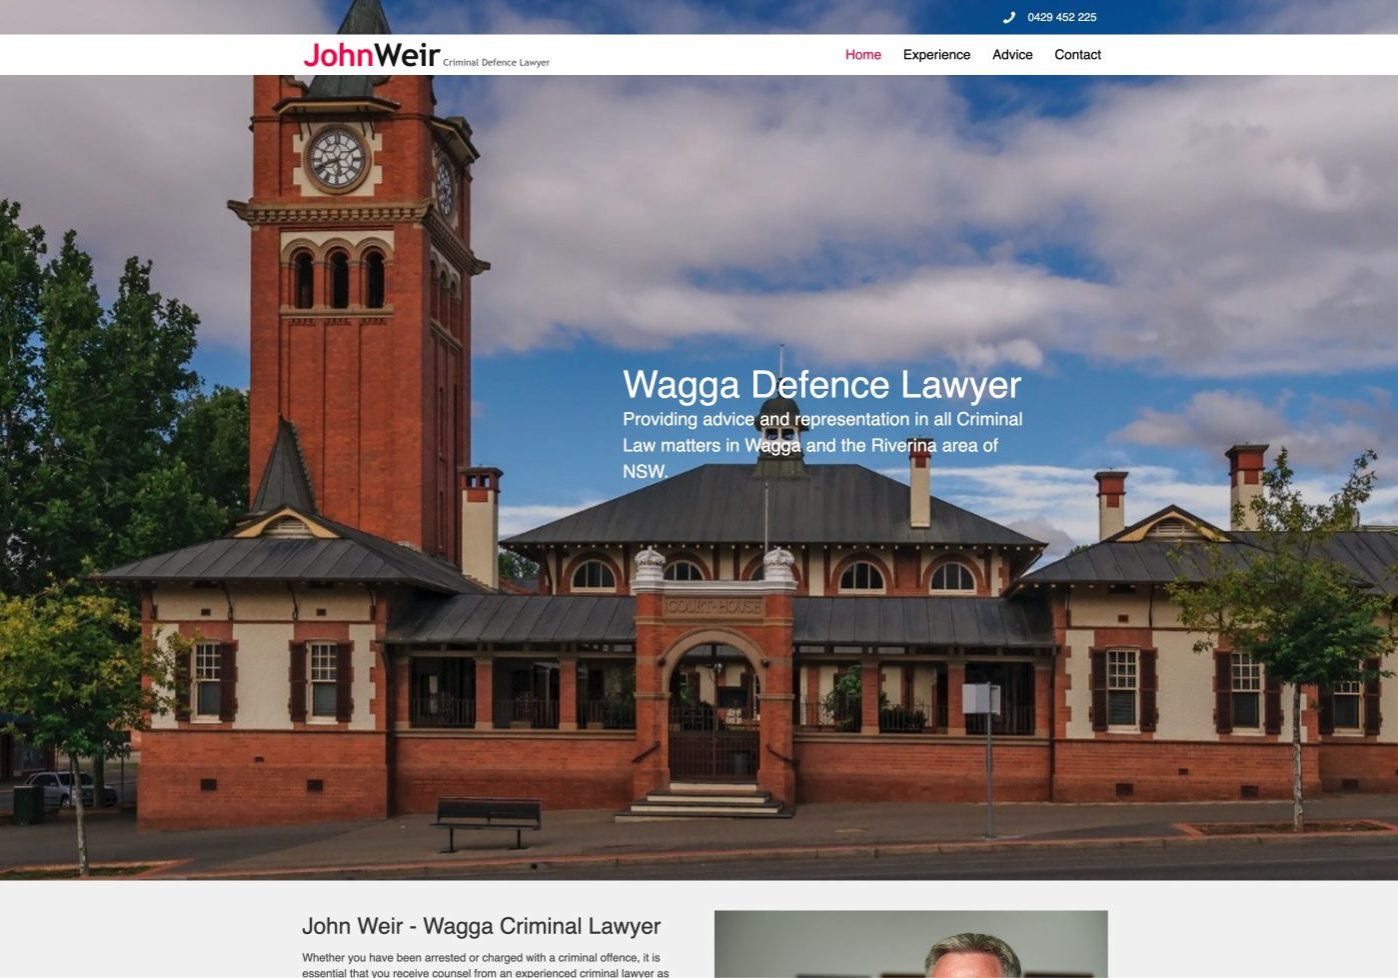 Wagga Lawyers